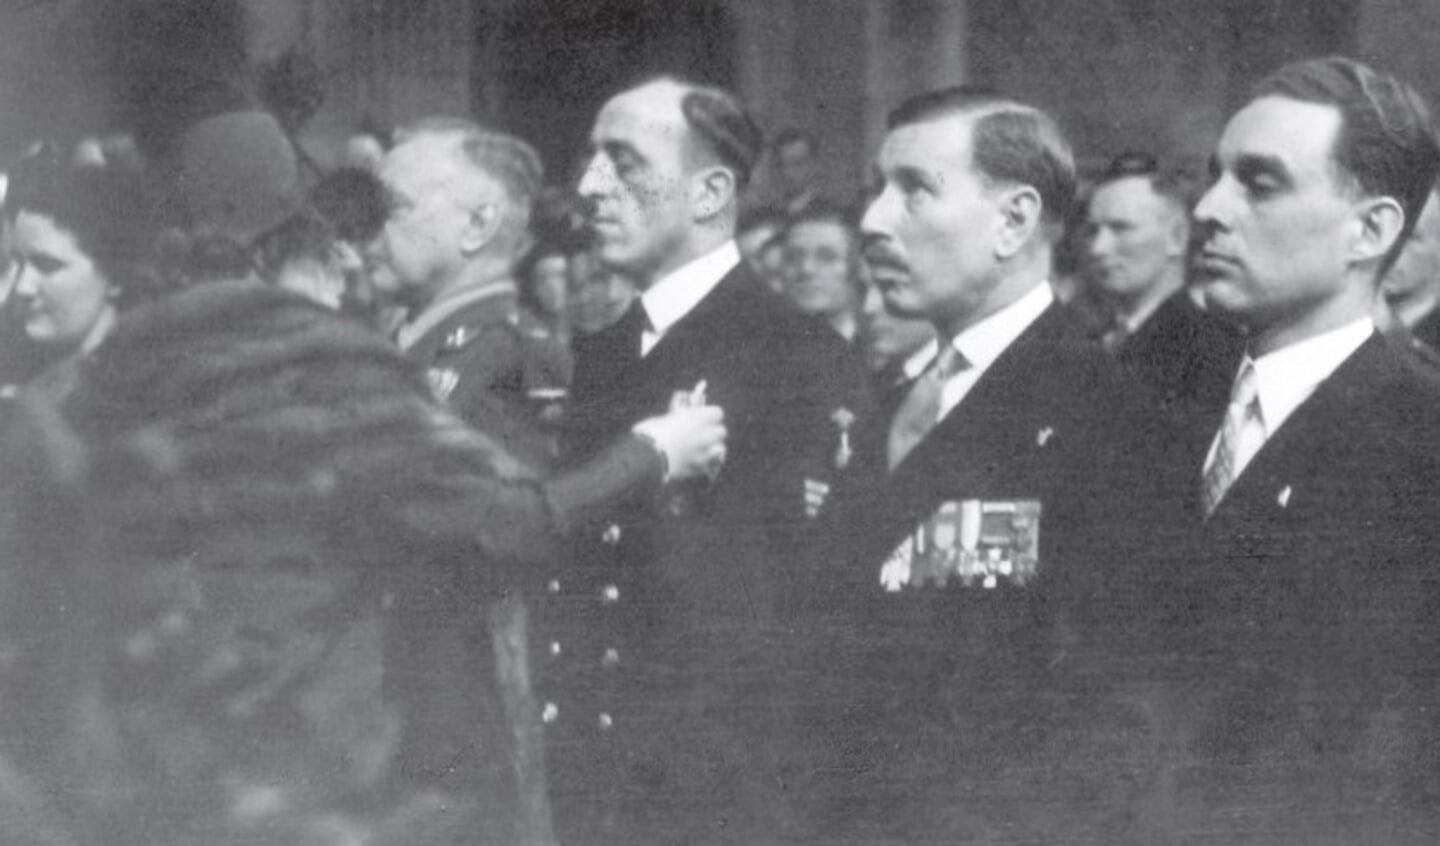 Foto: Willemsorde februari 1951

Pieter Dourlein ontving in februari de Militaire Willemsorde uit handen van koningin Juliana, waarmee zijn volledige rehabilitatie werd bevestigd. (bron: beeldbank NIMH)